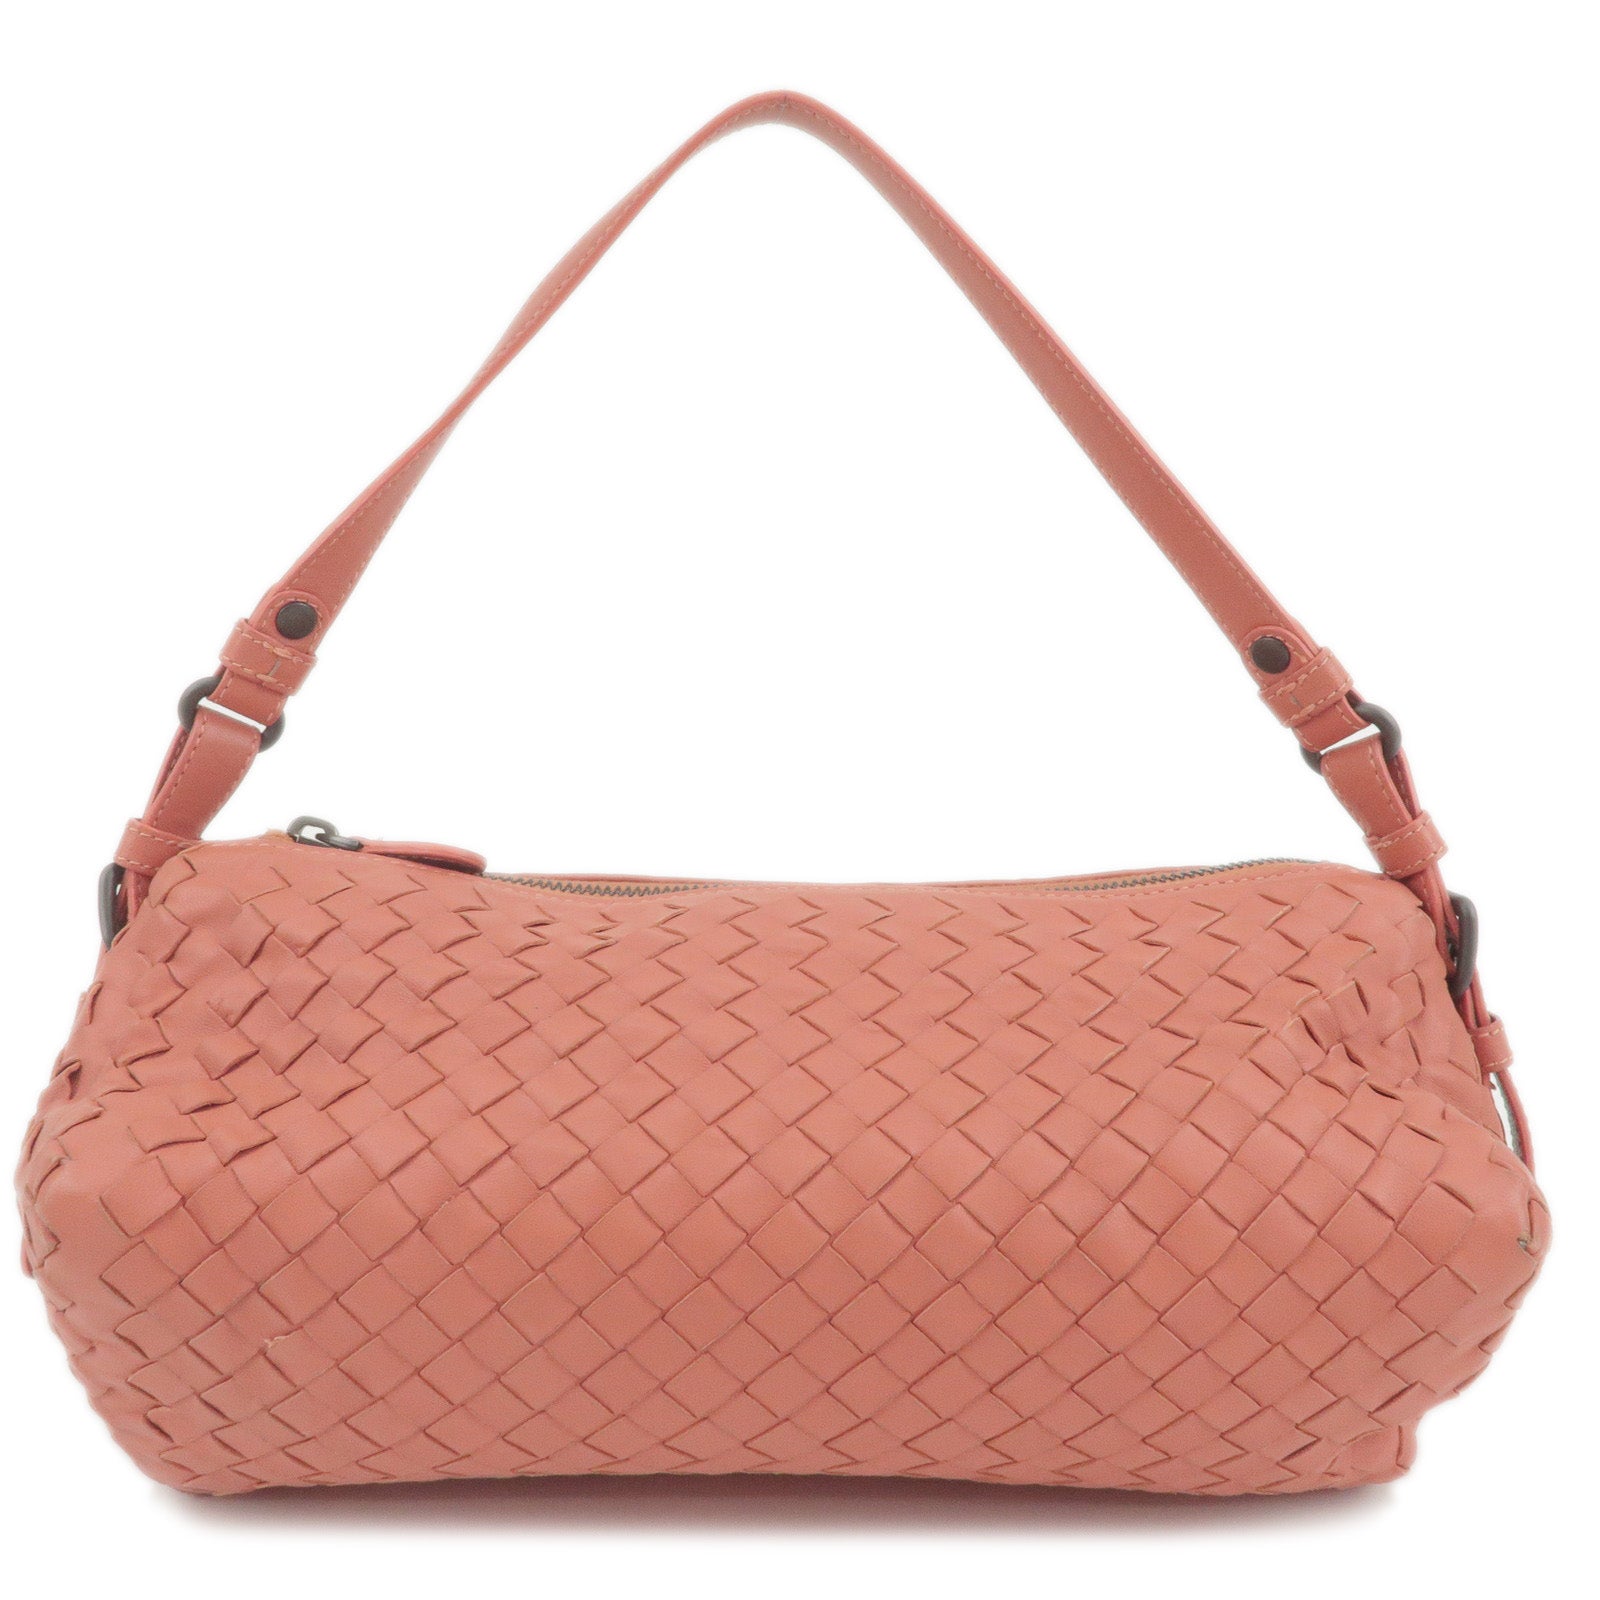 BOTTEGA-VENETA-Intrecciato-Leather-Shoulder-Bag-Hand-Bag-Pink